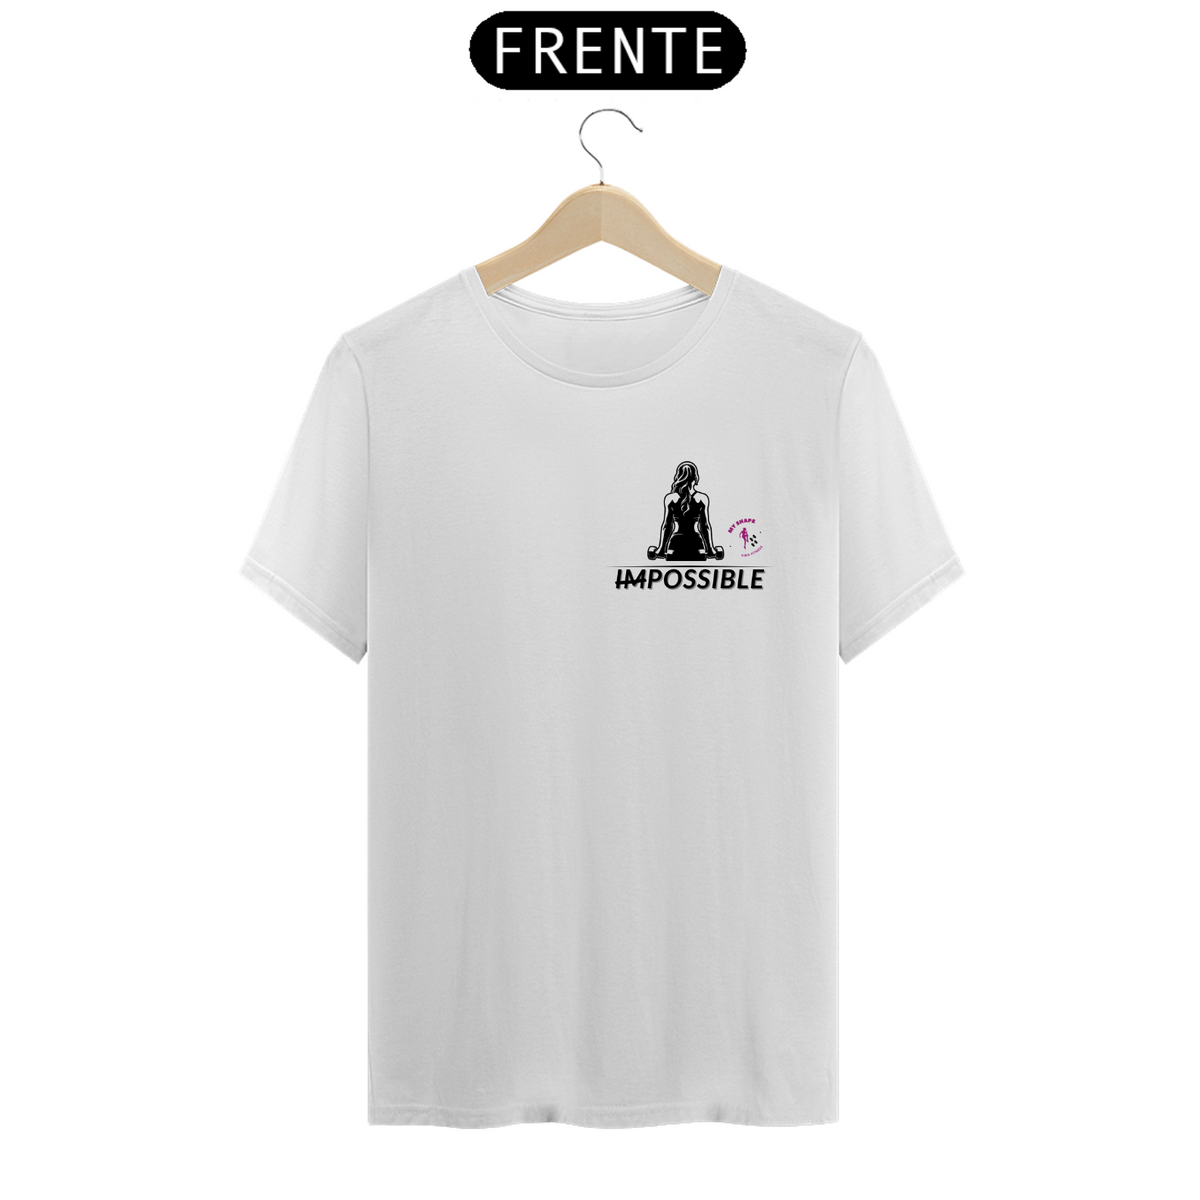 Nome do produto: T-shirt algodão feminina Impossible branca, rosa e cinza